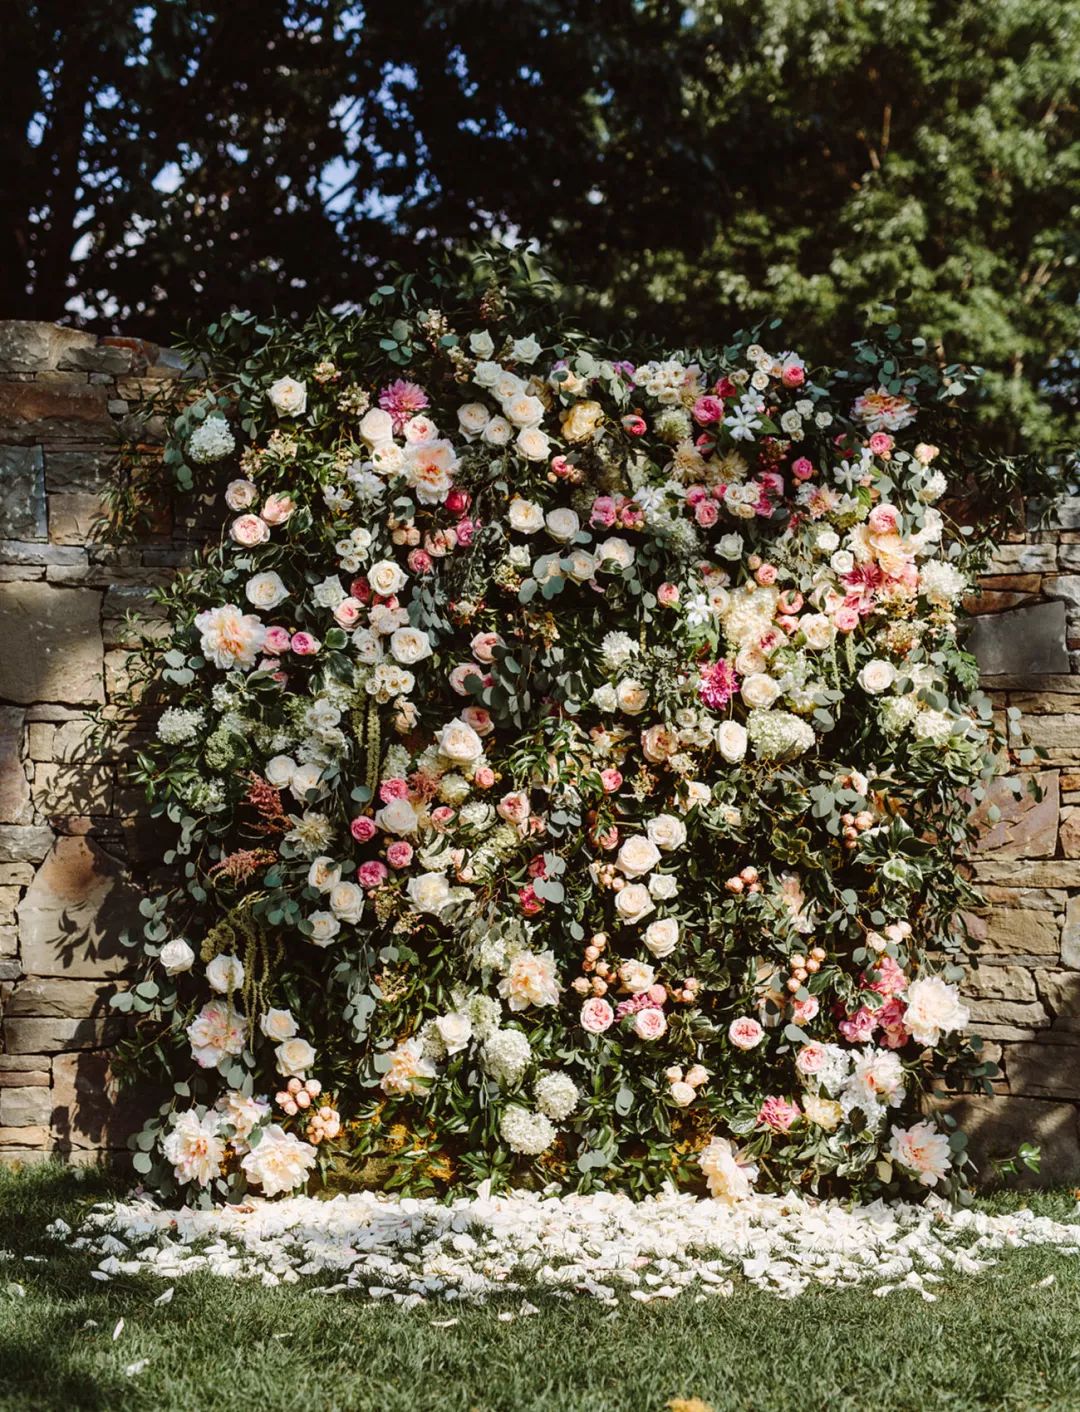 玫瑰怒放的墙 婚礼仪式背景是一面完全由玫瑰鲜花和绿叶组成的花墙,这